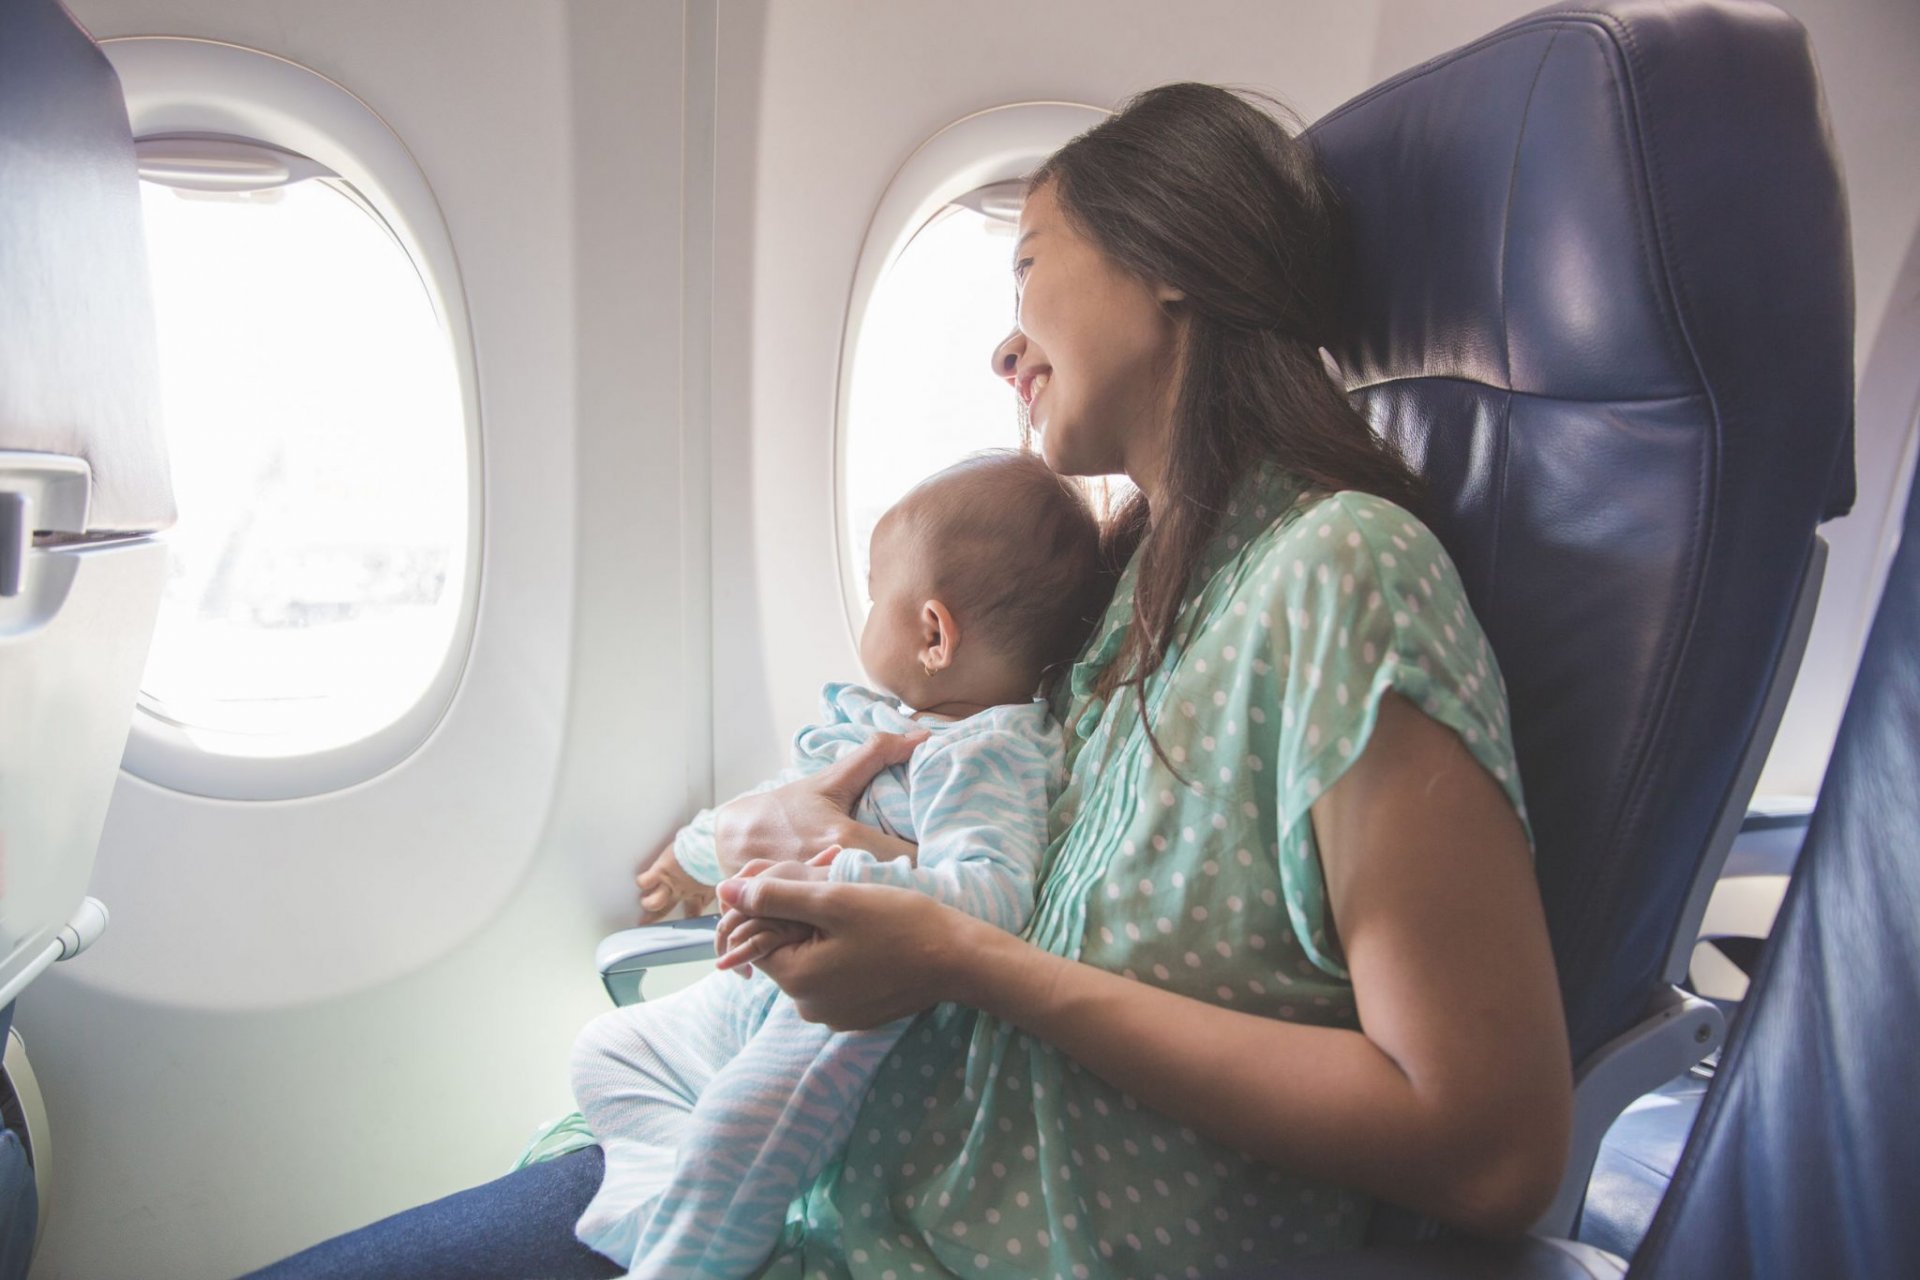 Чем занять ребенка в самолете - 55 крутых идей.что взять с собой для малыша?